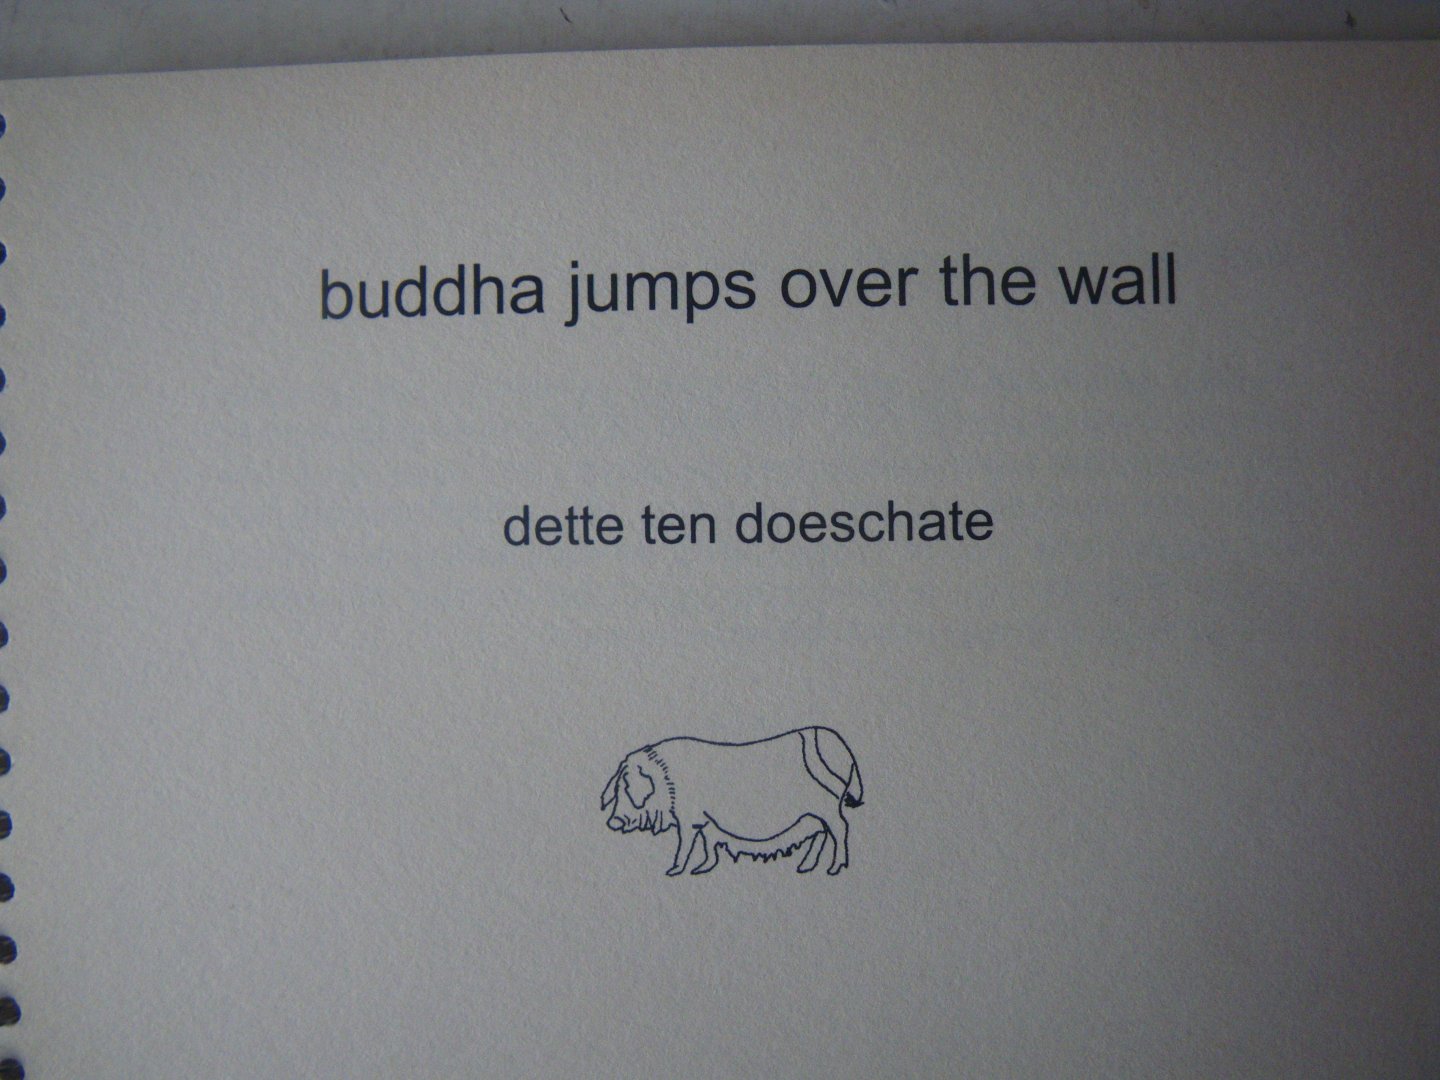 DOESCHATE, DETTE ten - Buddha jumps over the wall - een oriëntering - ruim 180 varkenssoorten - kleurboek